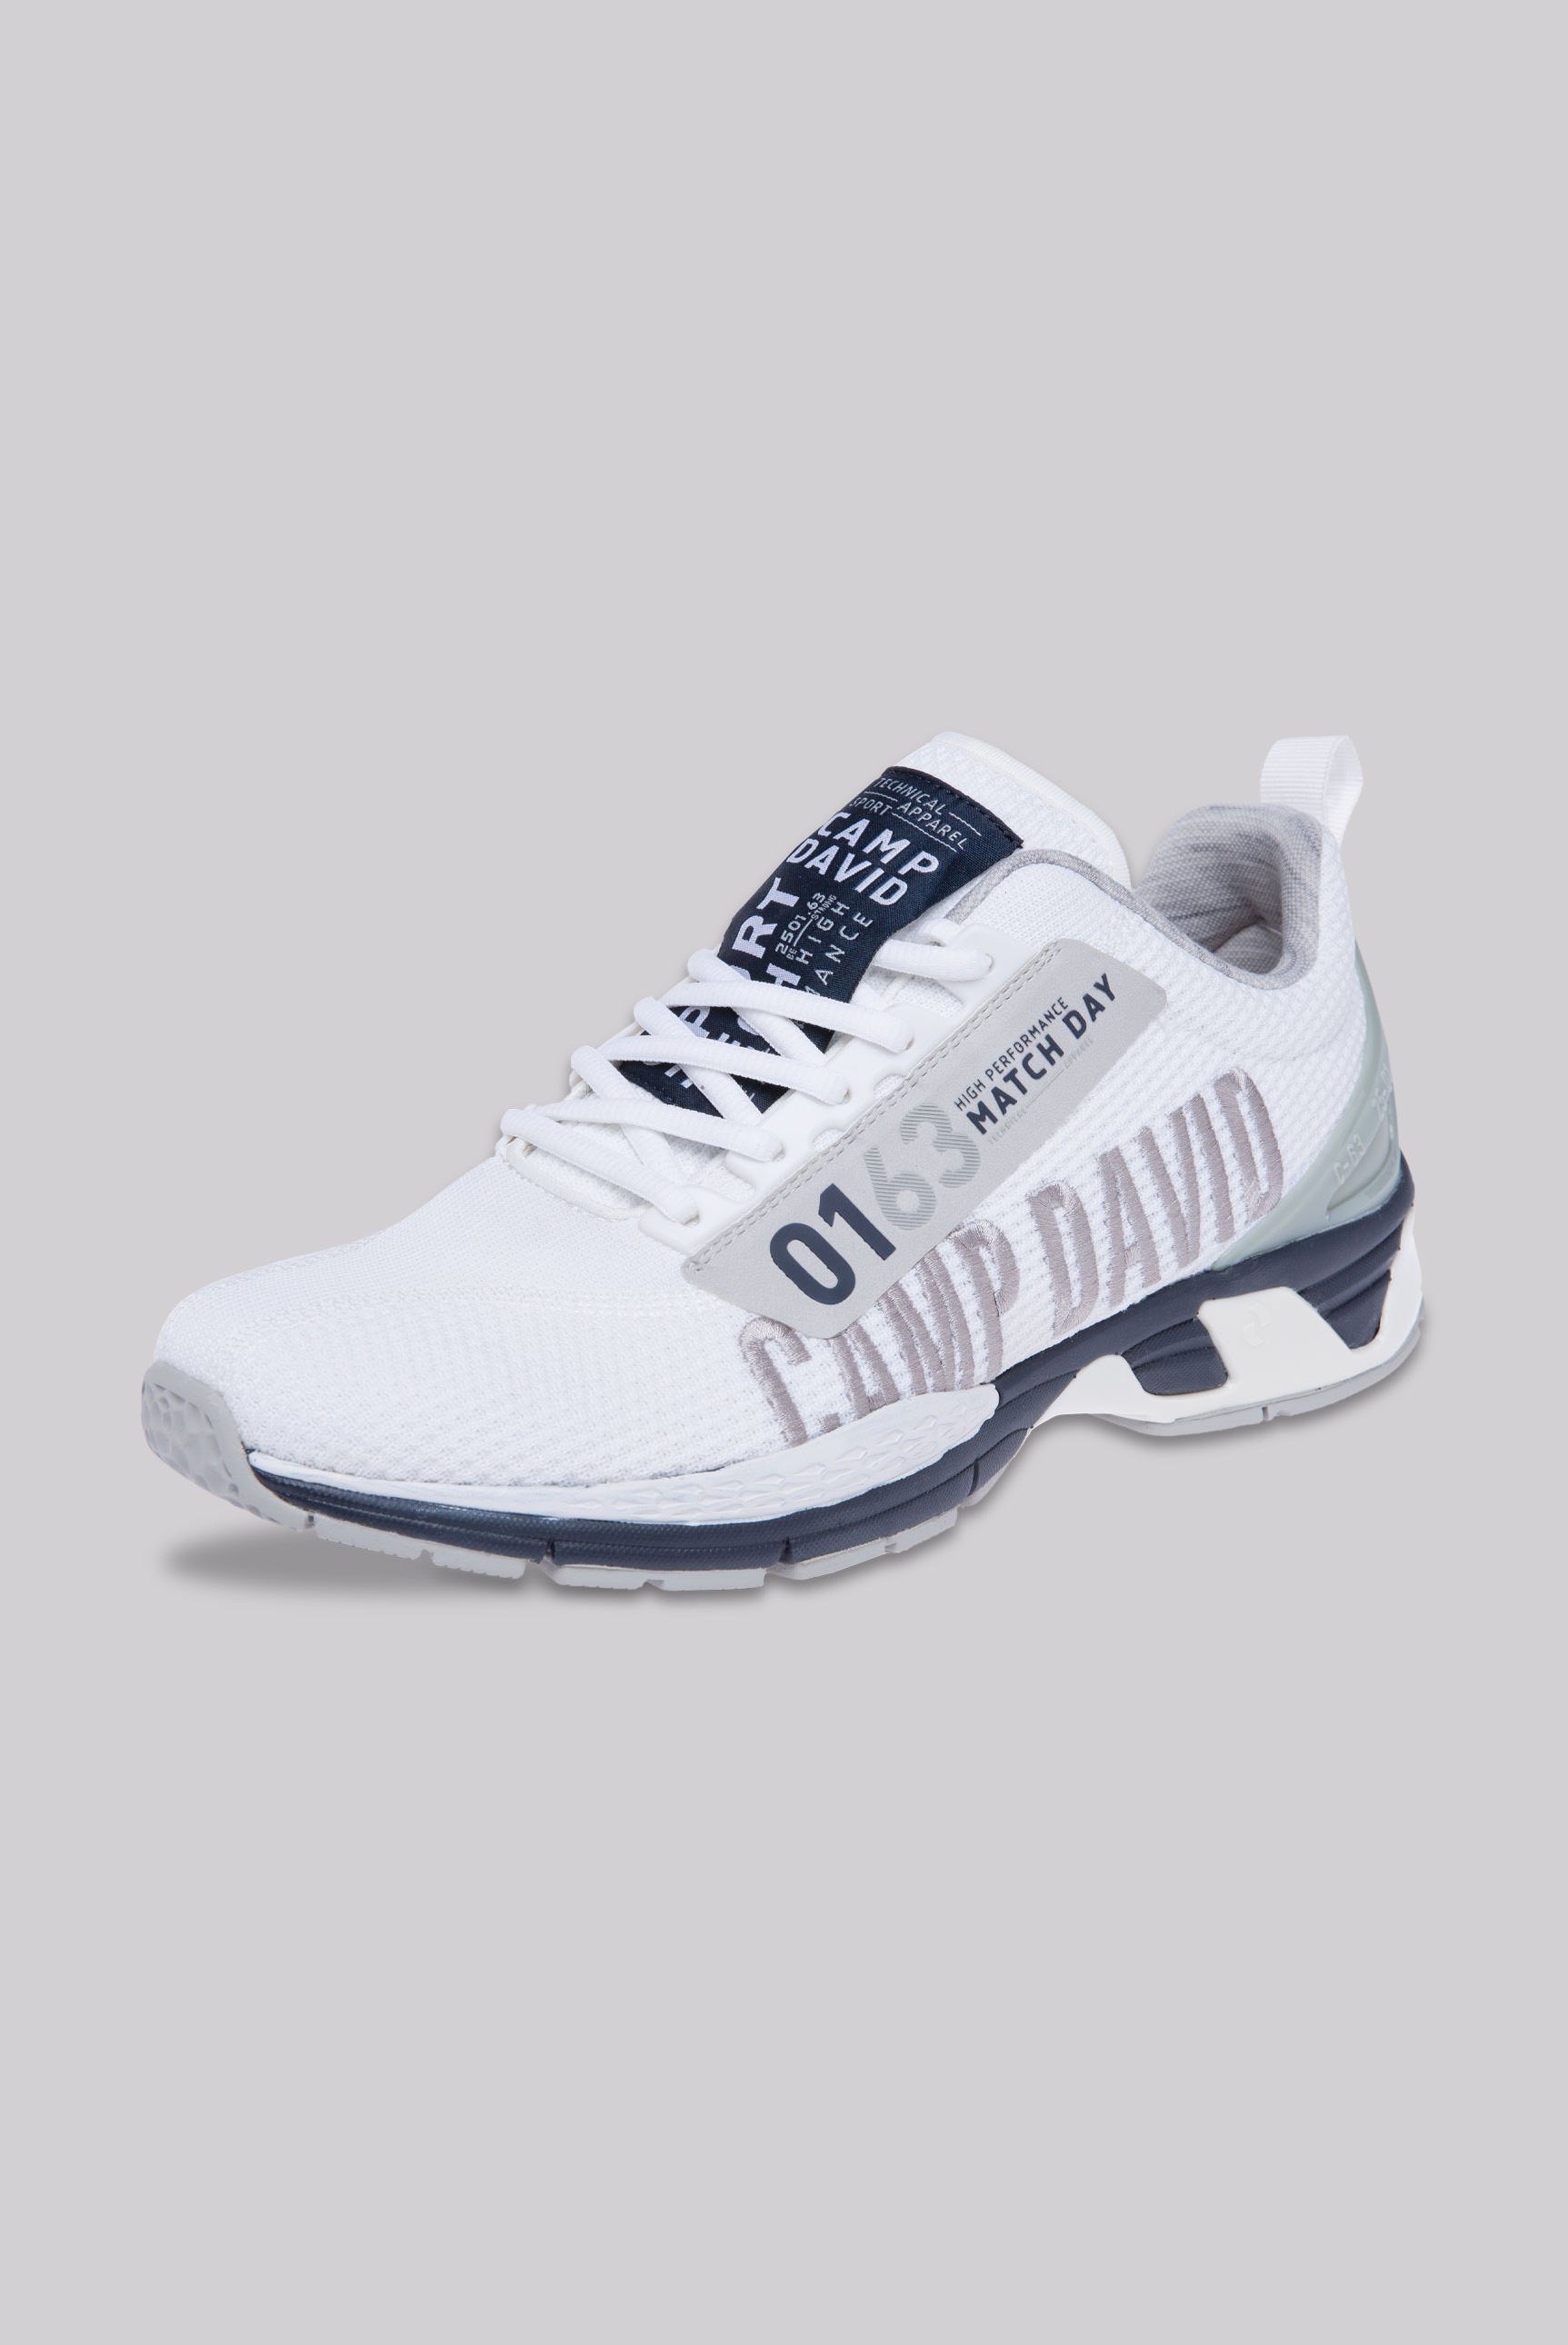 CAMP DAVID Sneaker mit Wechselfußbett, 10-Loch-Schnürung online kaufen |  OTTO